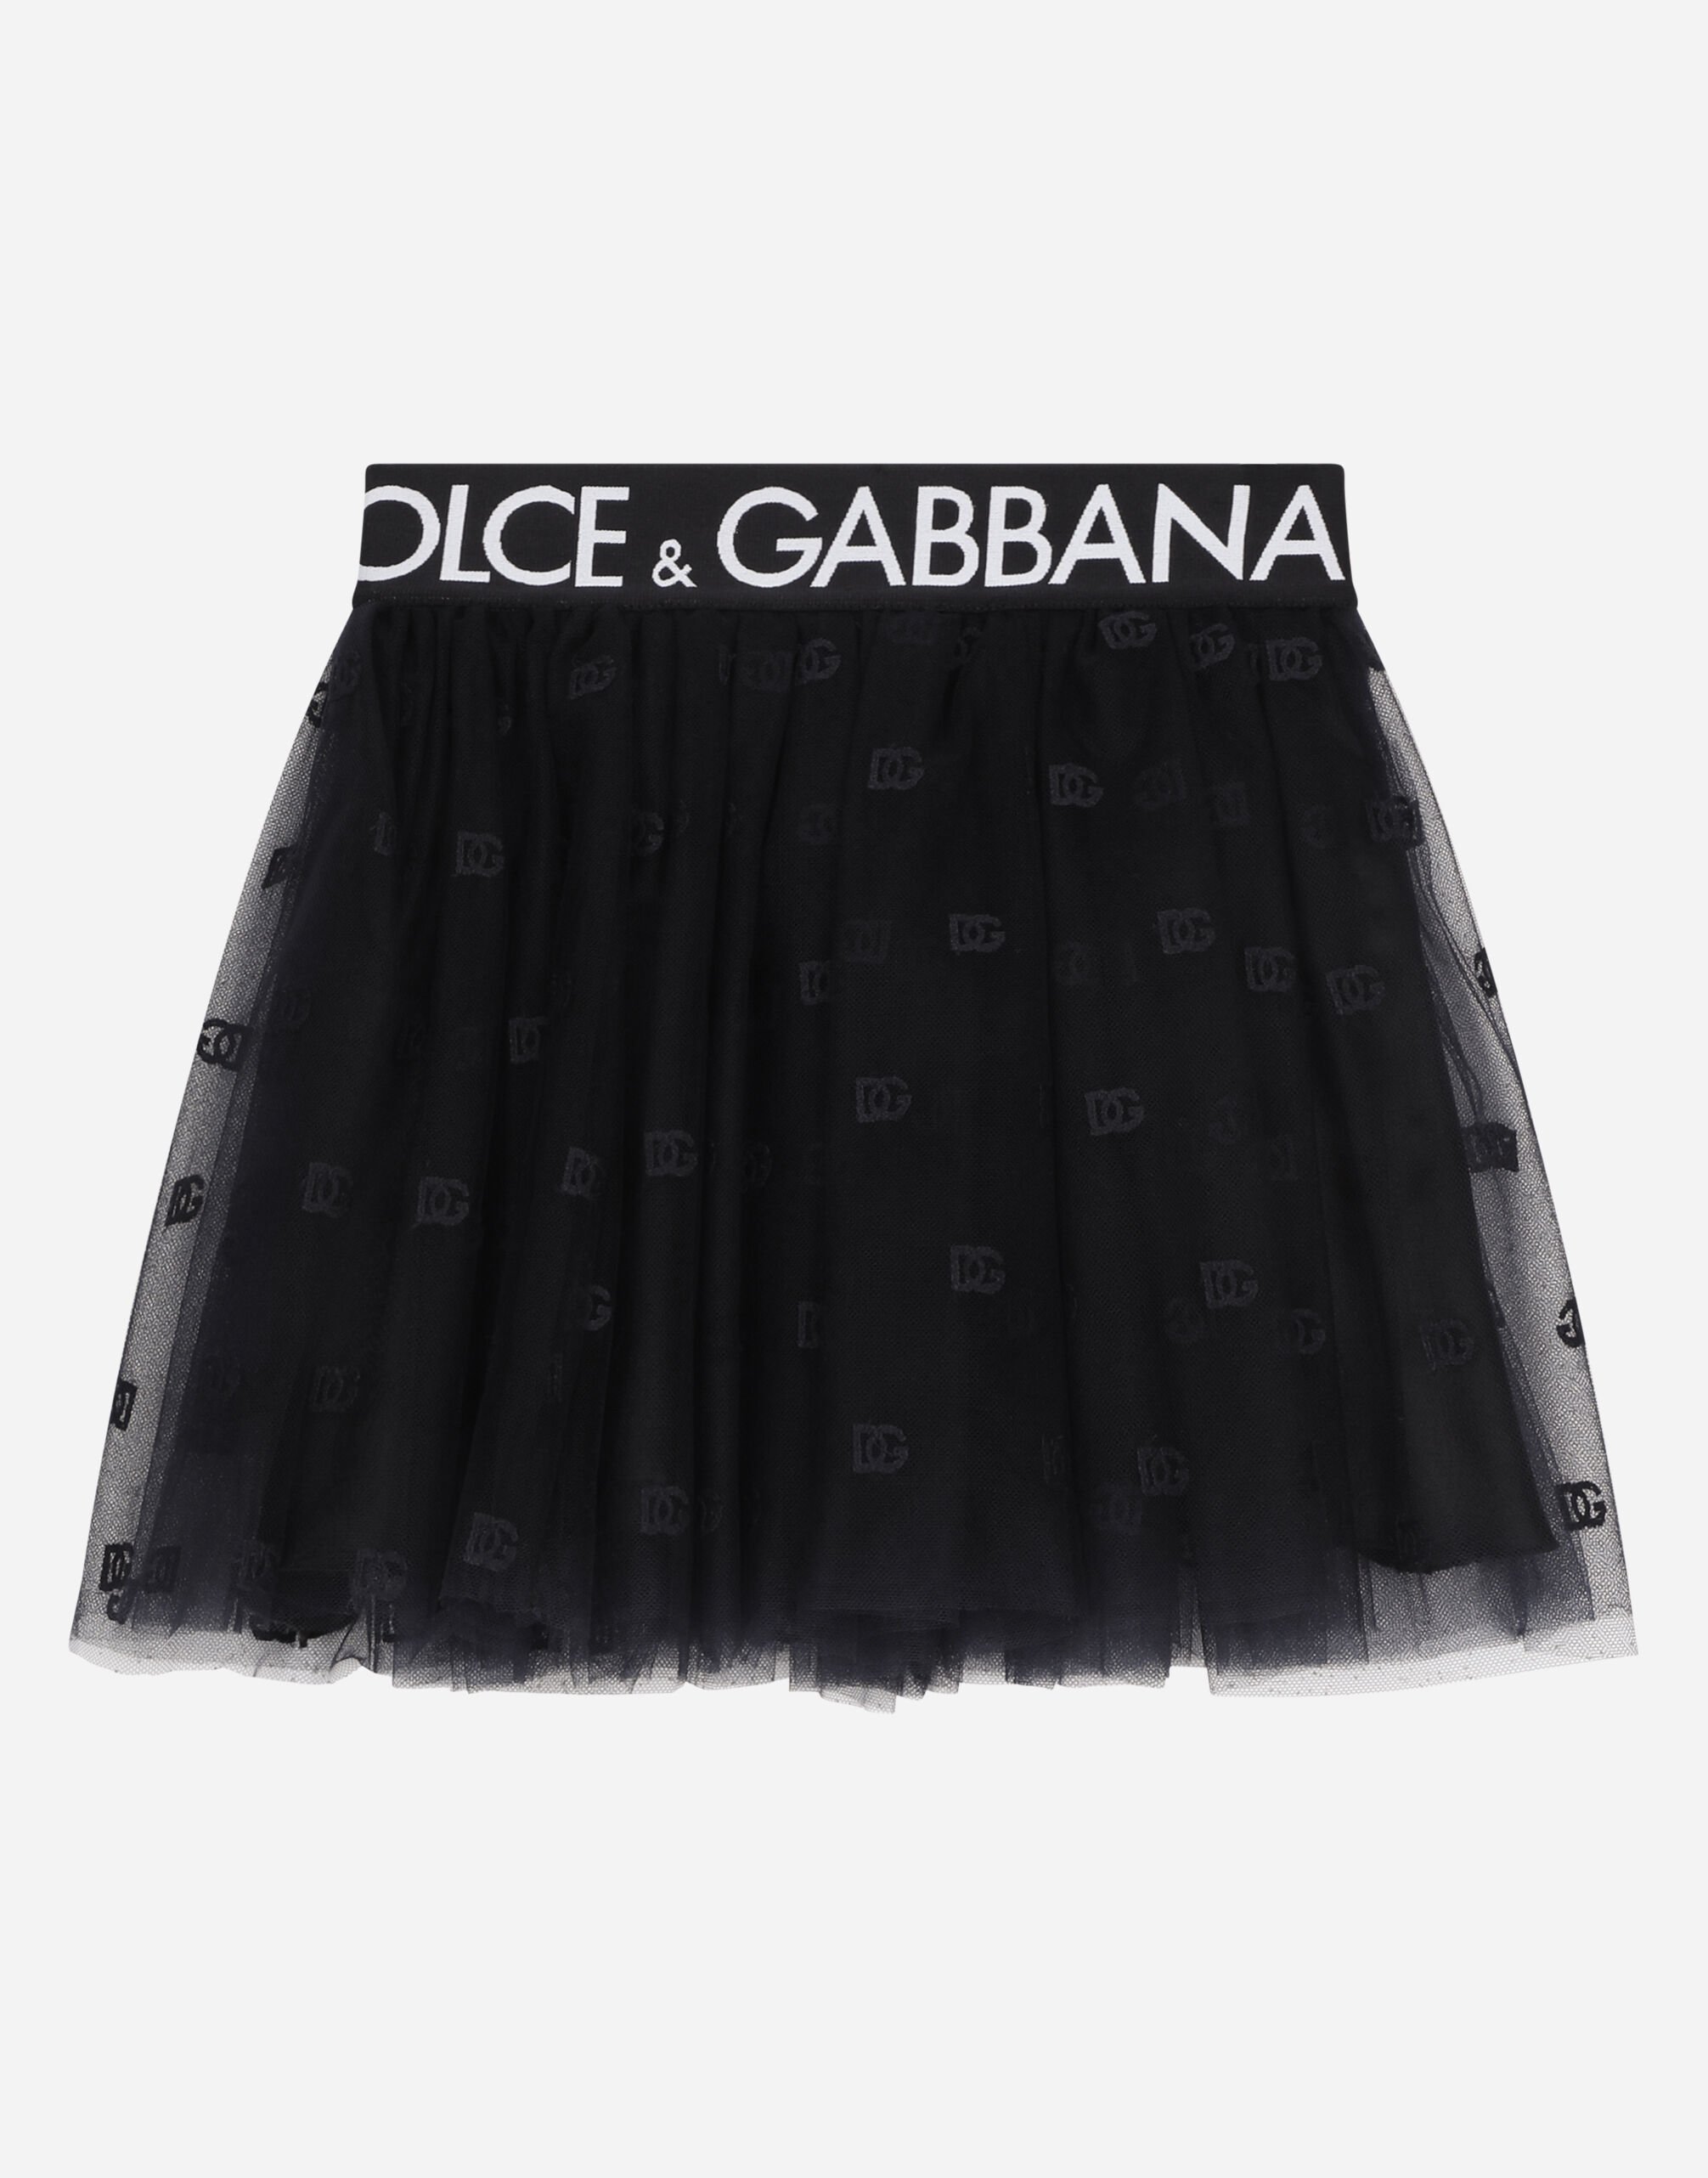 Dolce & Gabbana تنورة قصيرة من التول متعددة الطبقات مع نسيج مرن موسوم أسود EB0003AB000